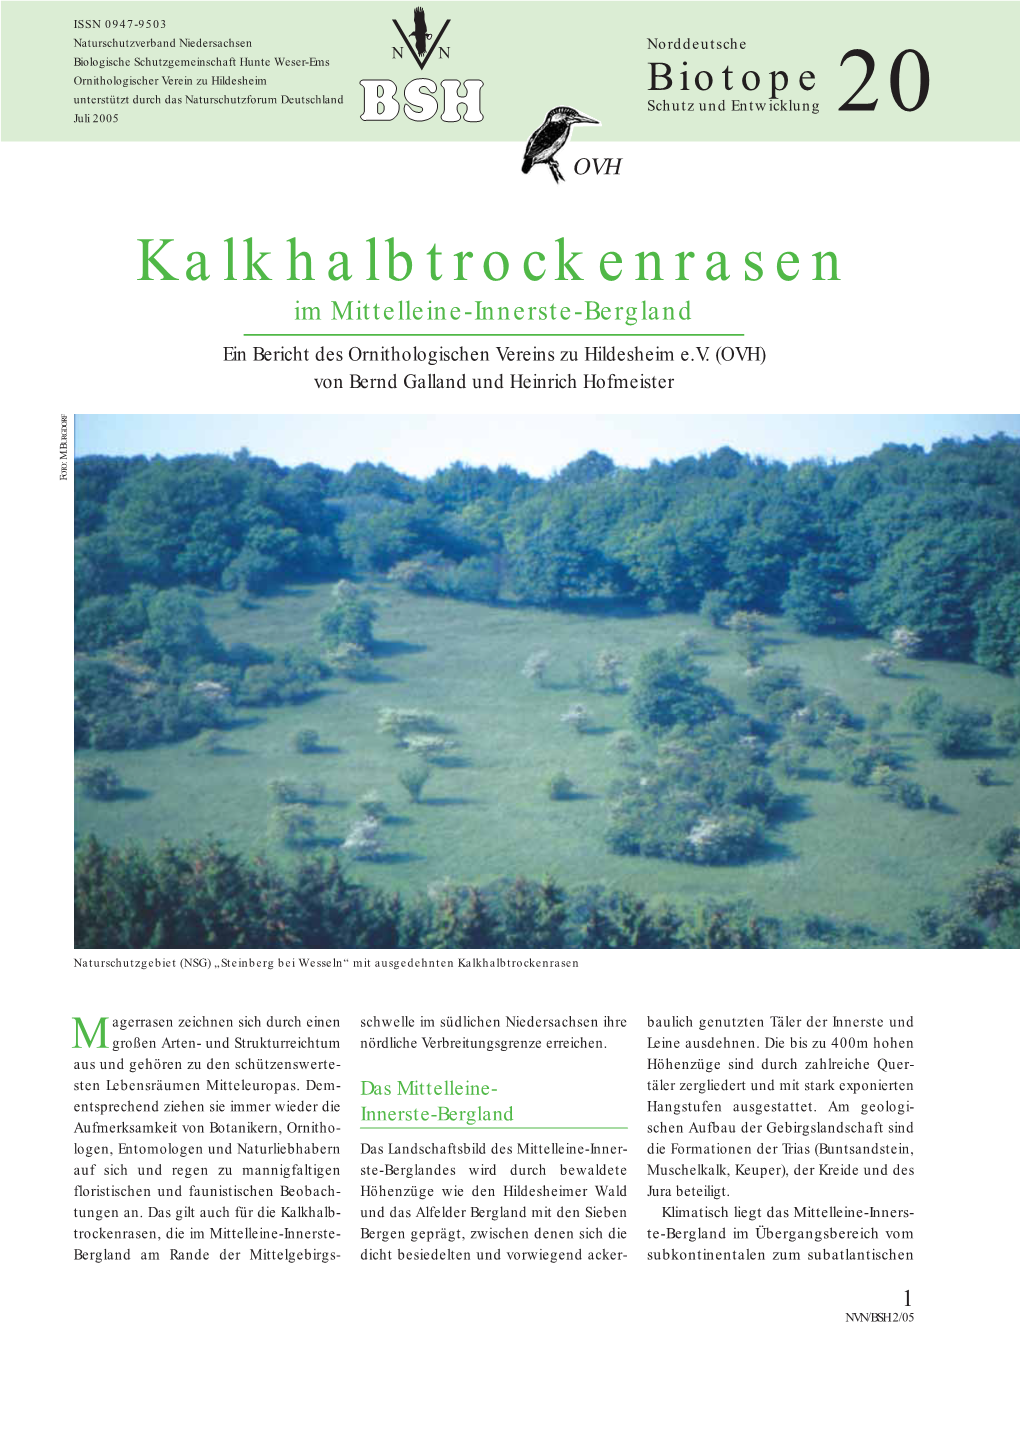 Kalkhalbtrockenrasen Im Mittelleine-Innerste-Bergland Ein Bericht Des Ornithologischen Vereins Zu Hildesheim E.V